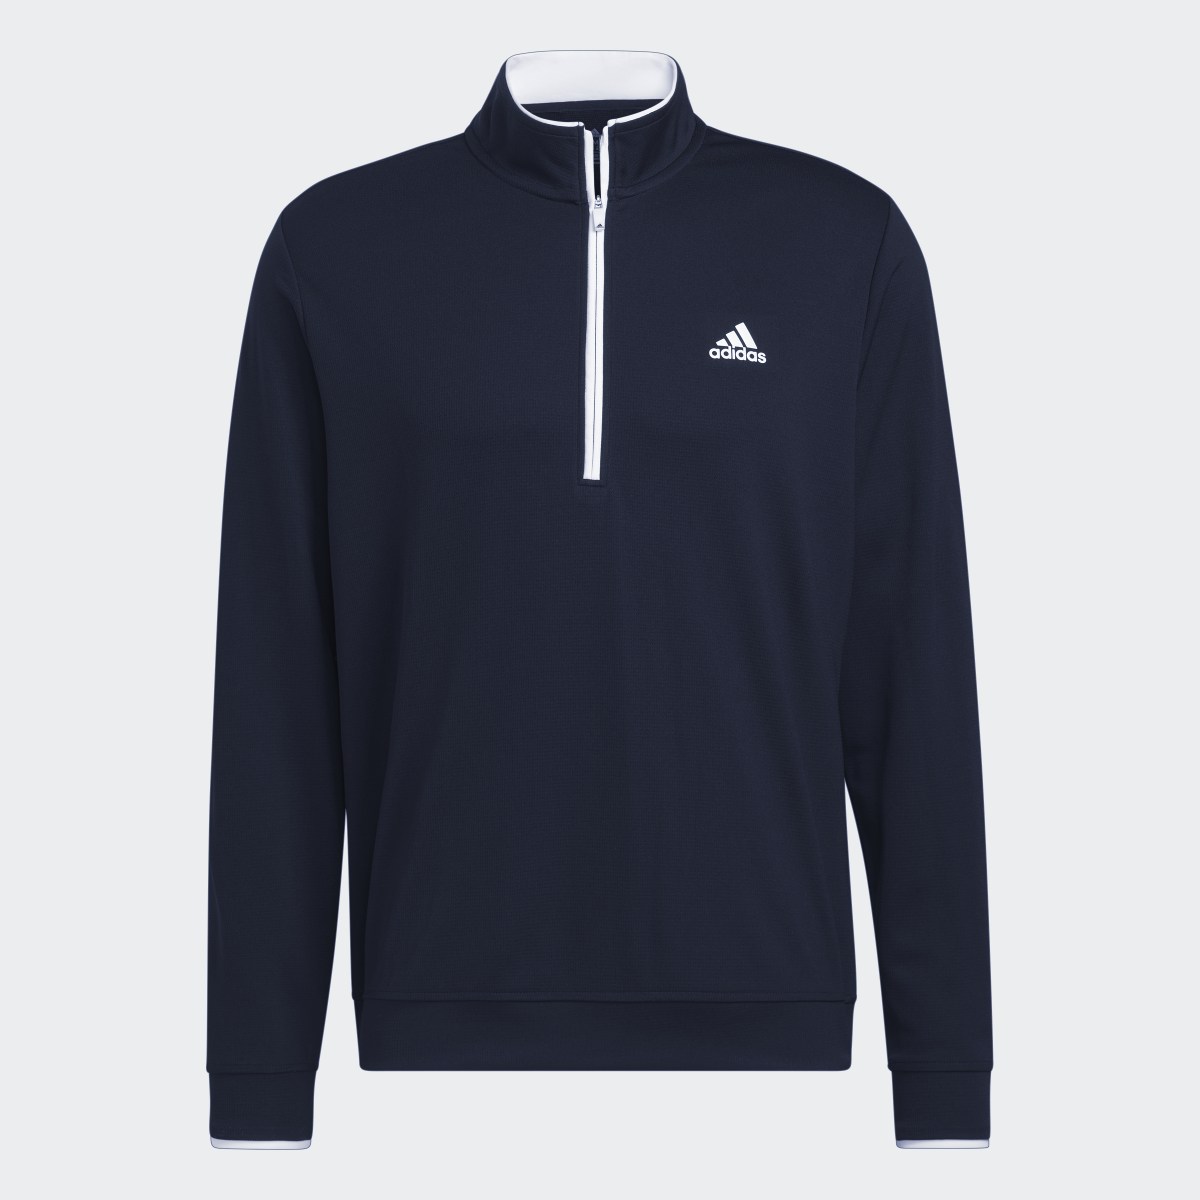 Adidas Quarter-Zip Pullover. 5